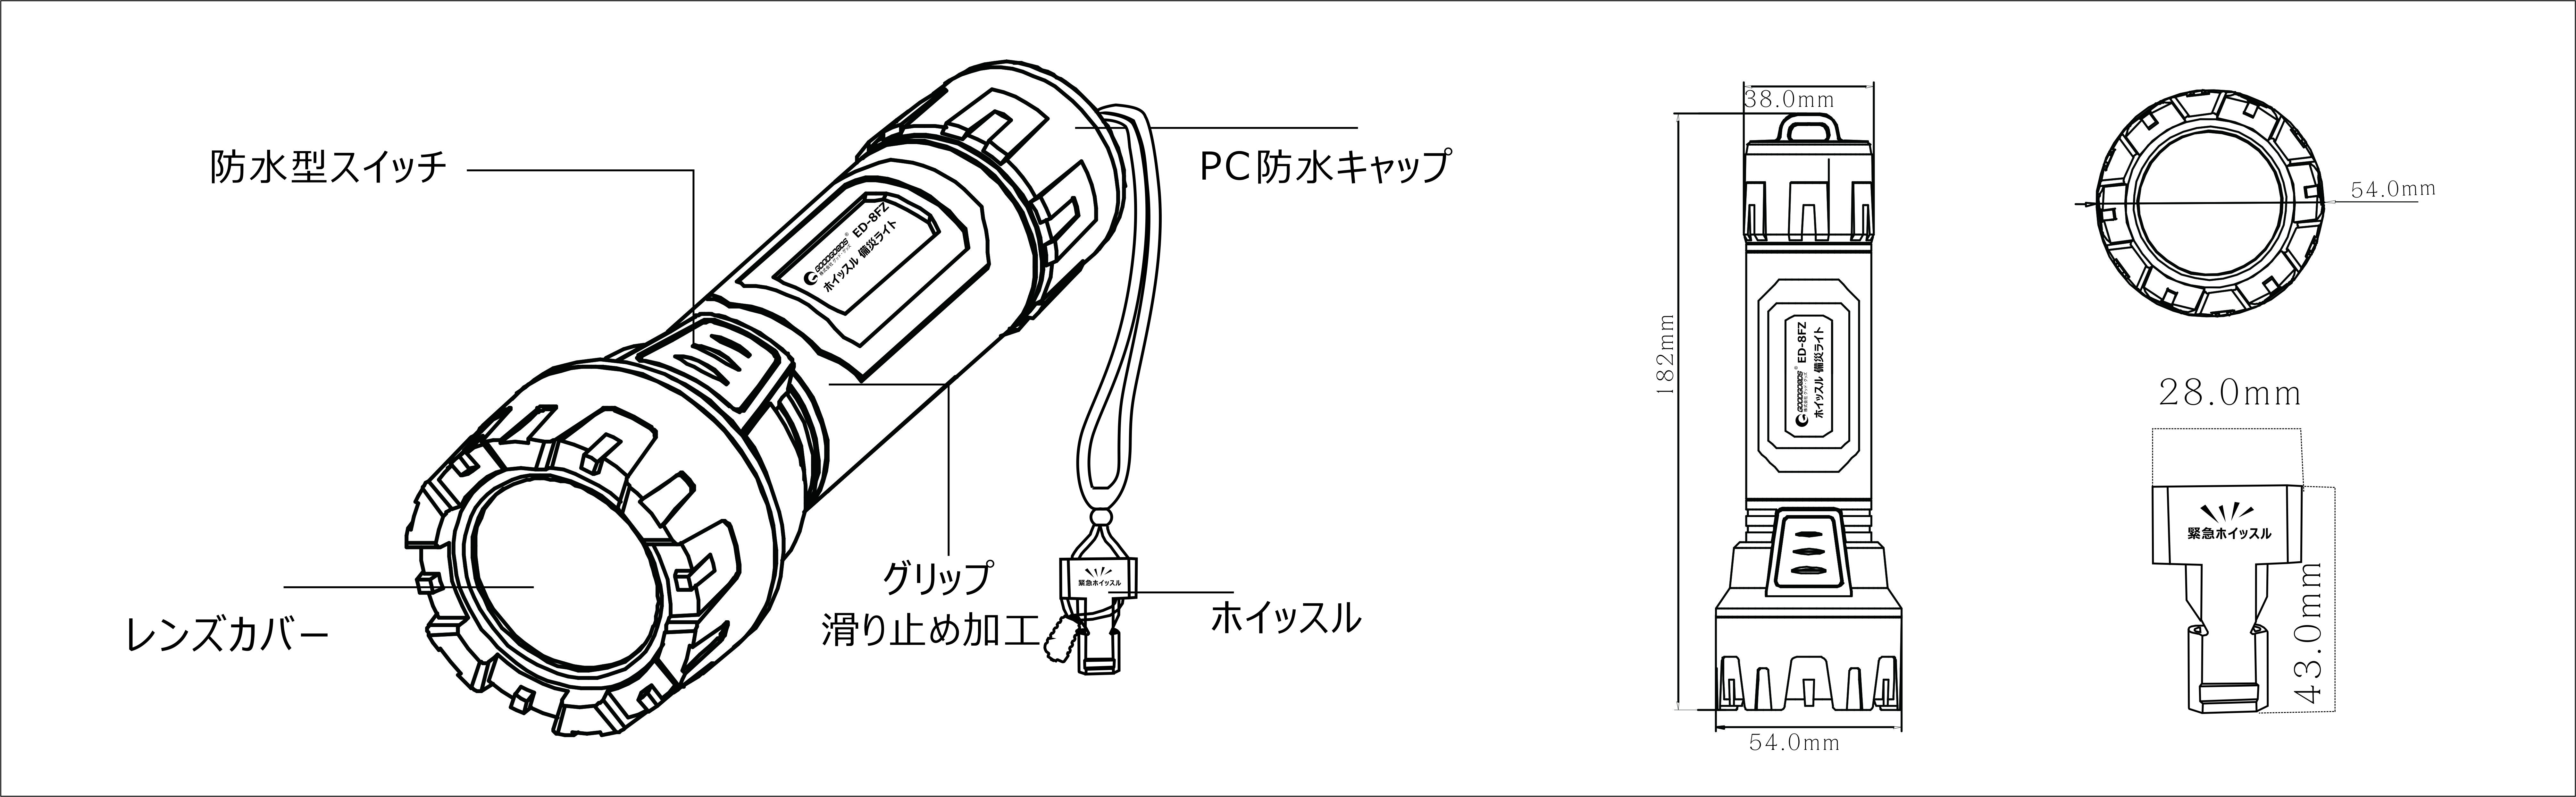 ホイッスル付きLED懐中電灯ED-8FZの仕様図面